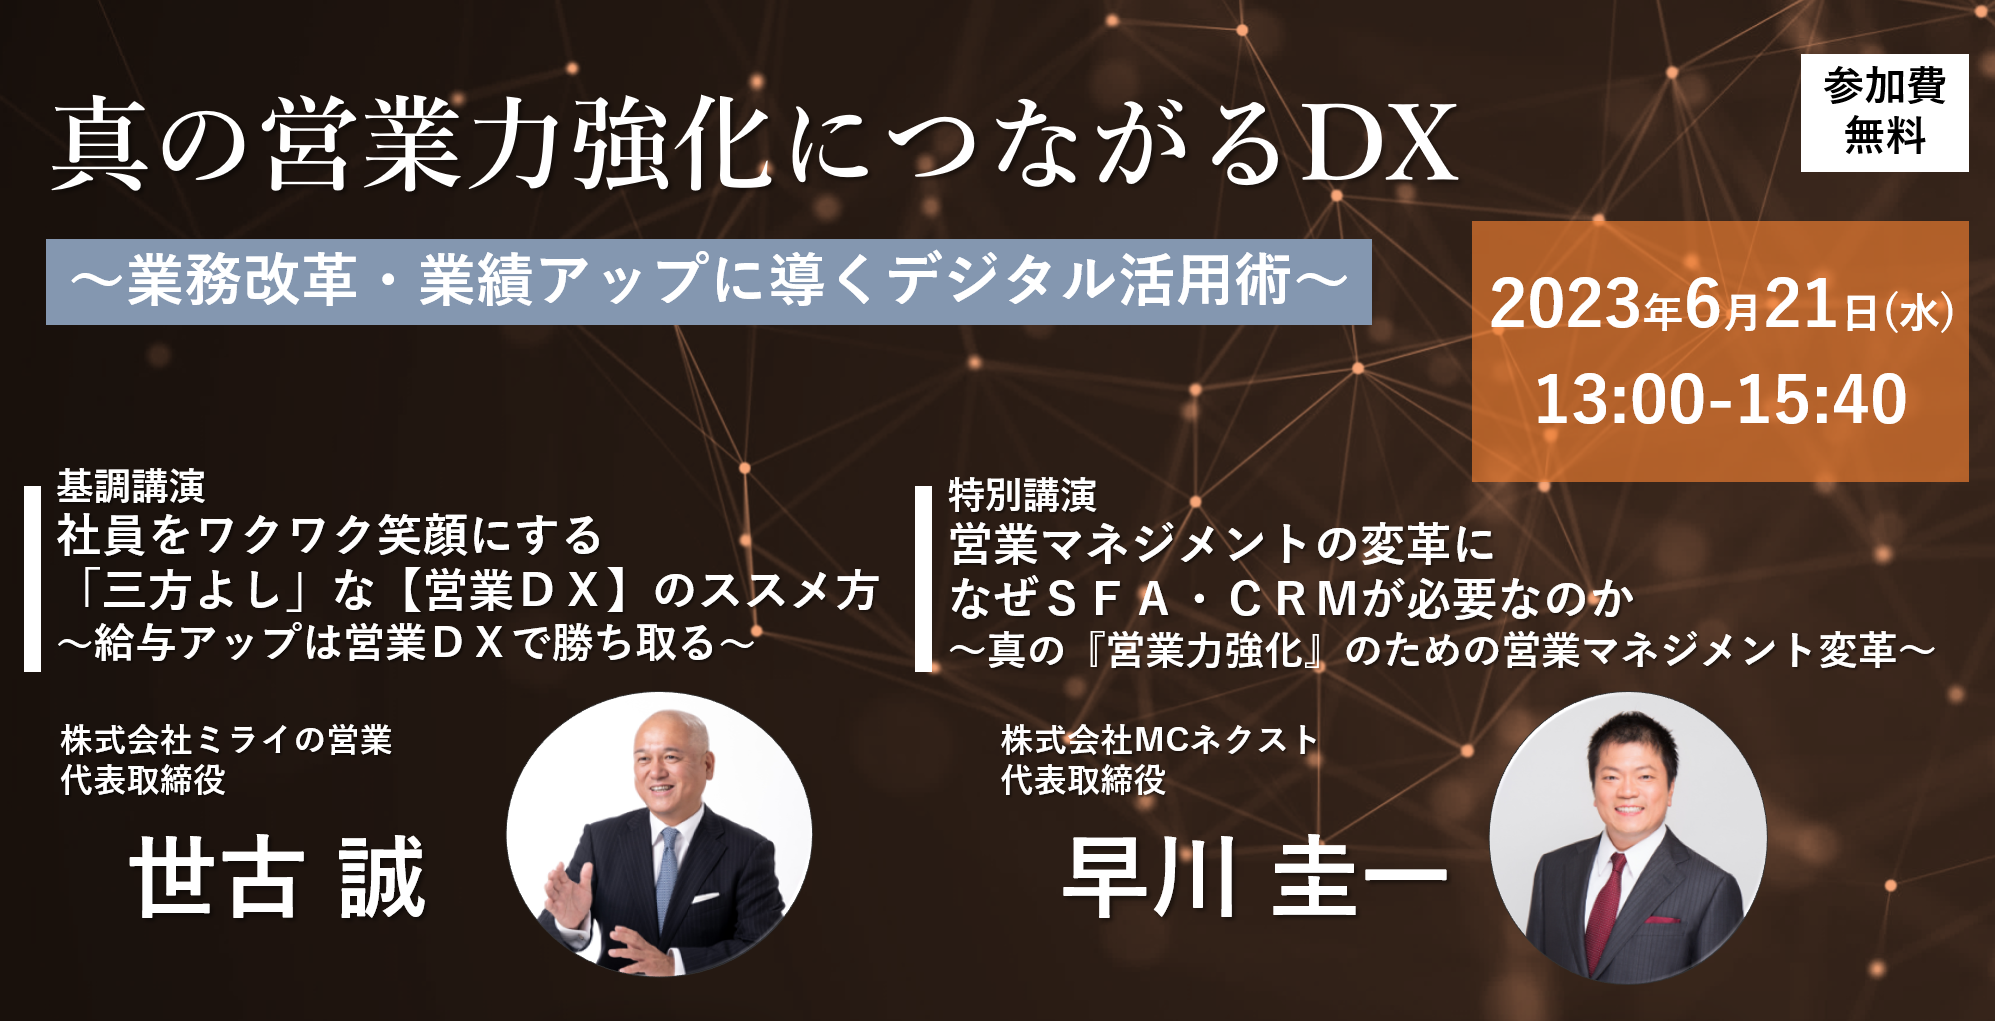 真の営業力強化につながるDX」 6月21日(水)オンラインセミナー開催 